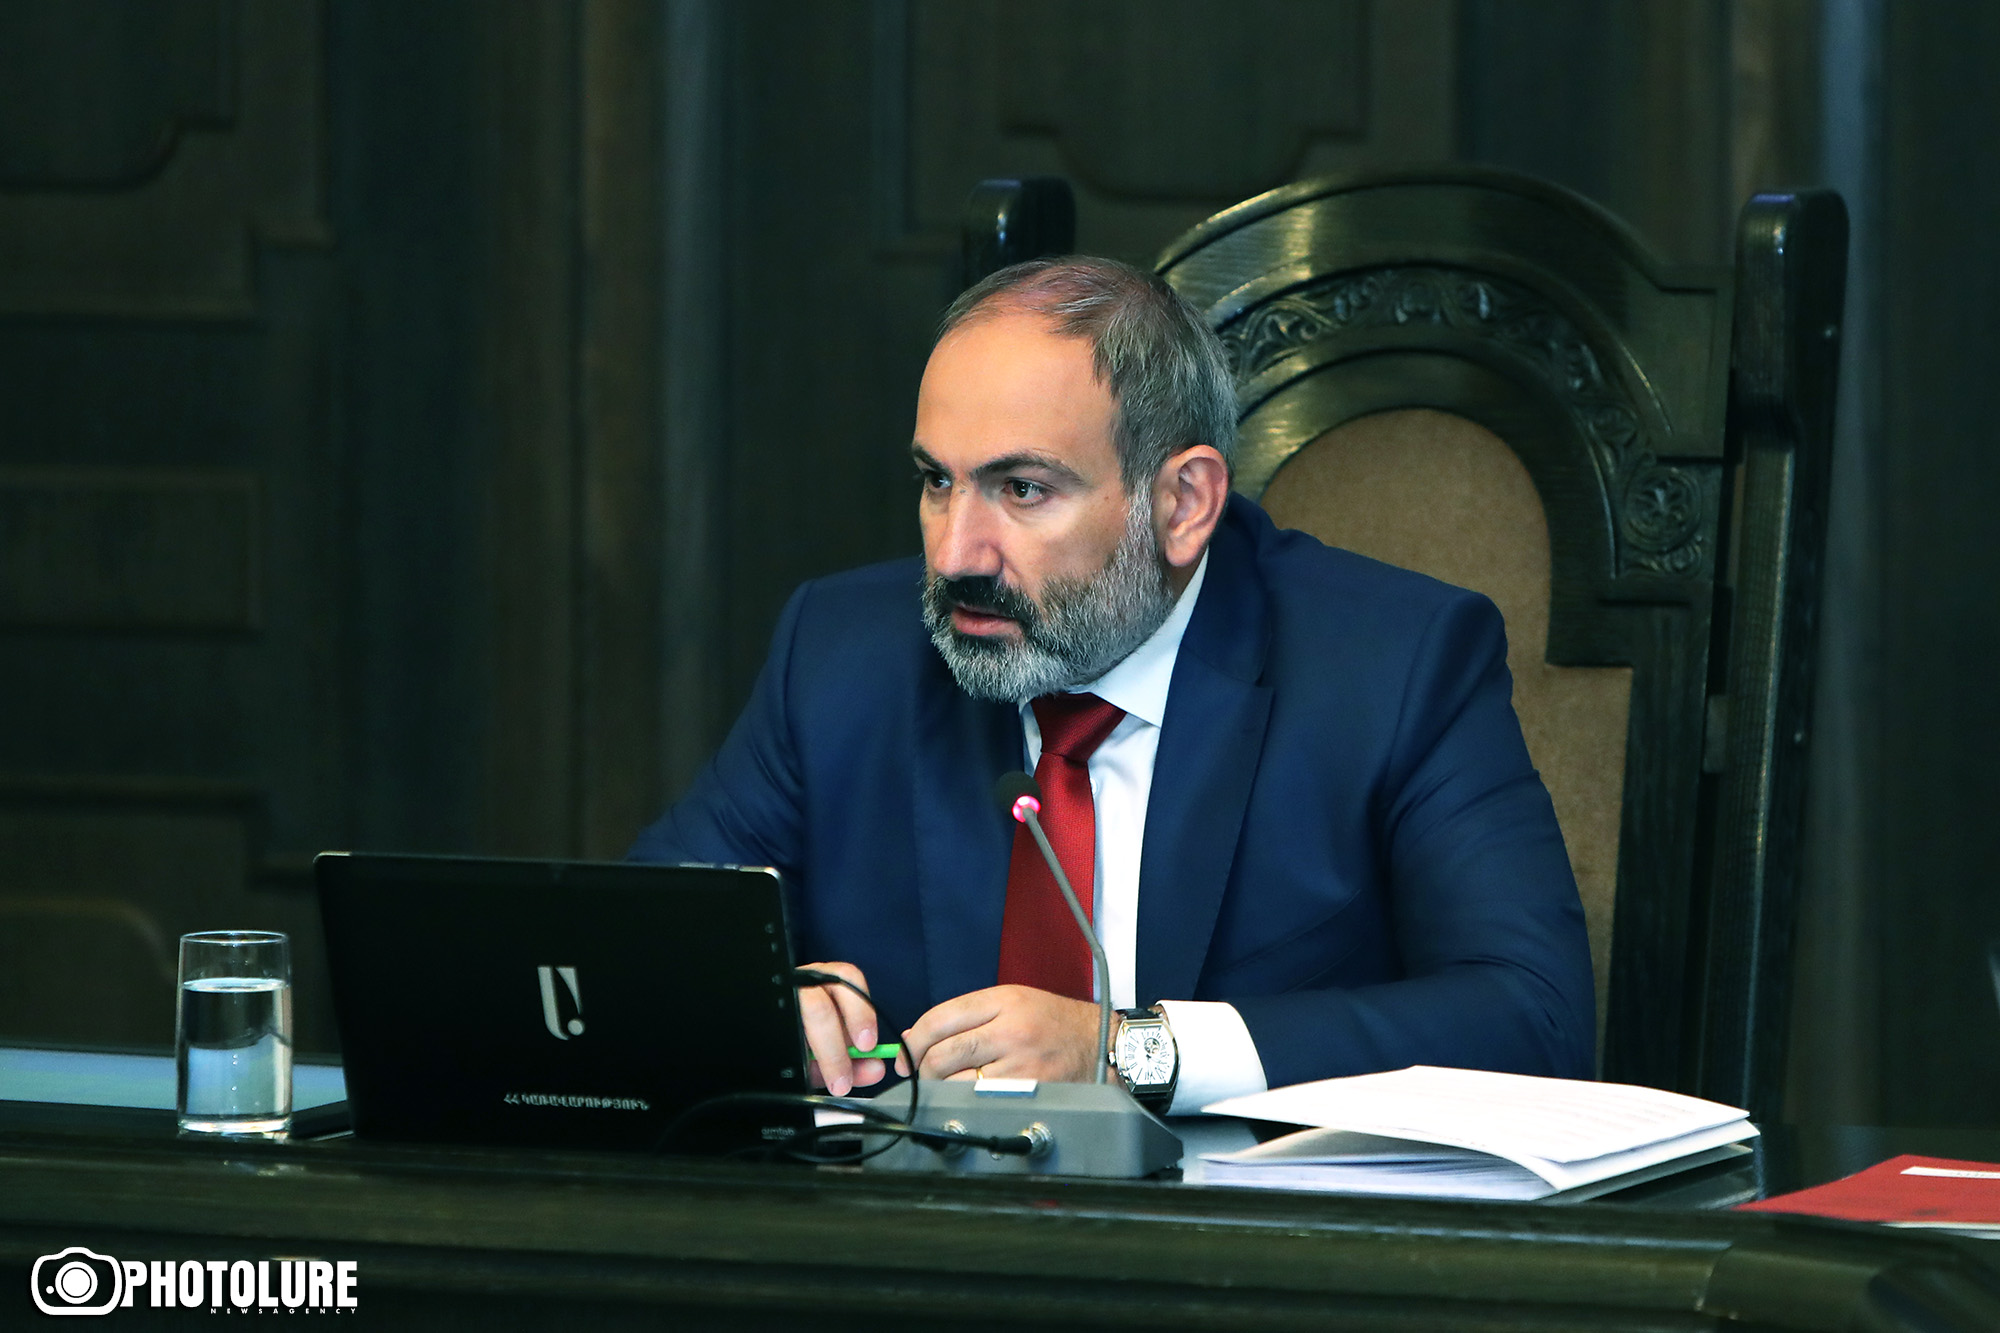 С 1 января 2020 года в Армении пенсии будут повышены на 10% - Пашинян